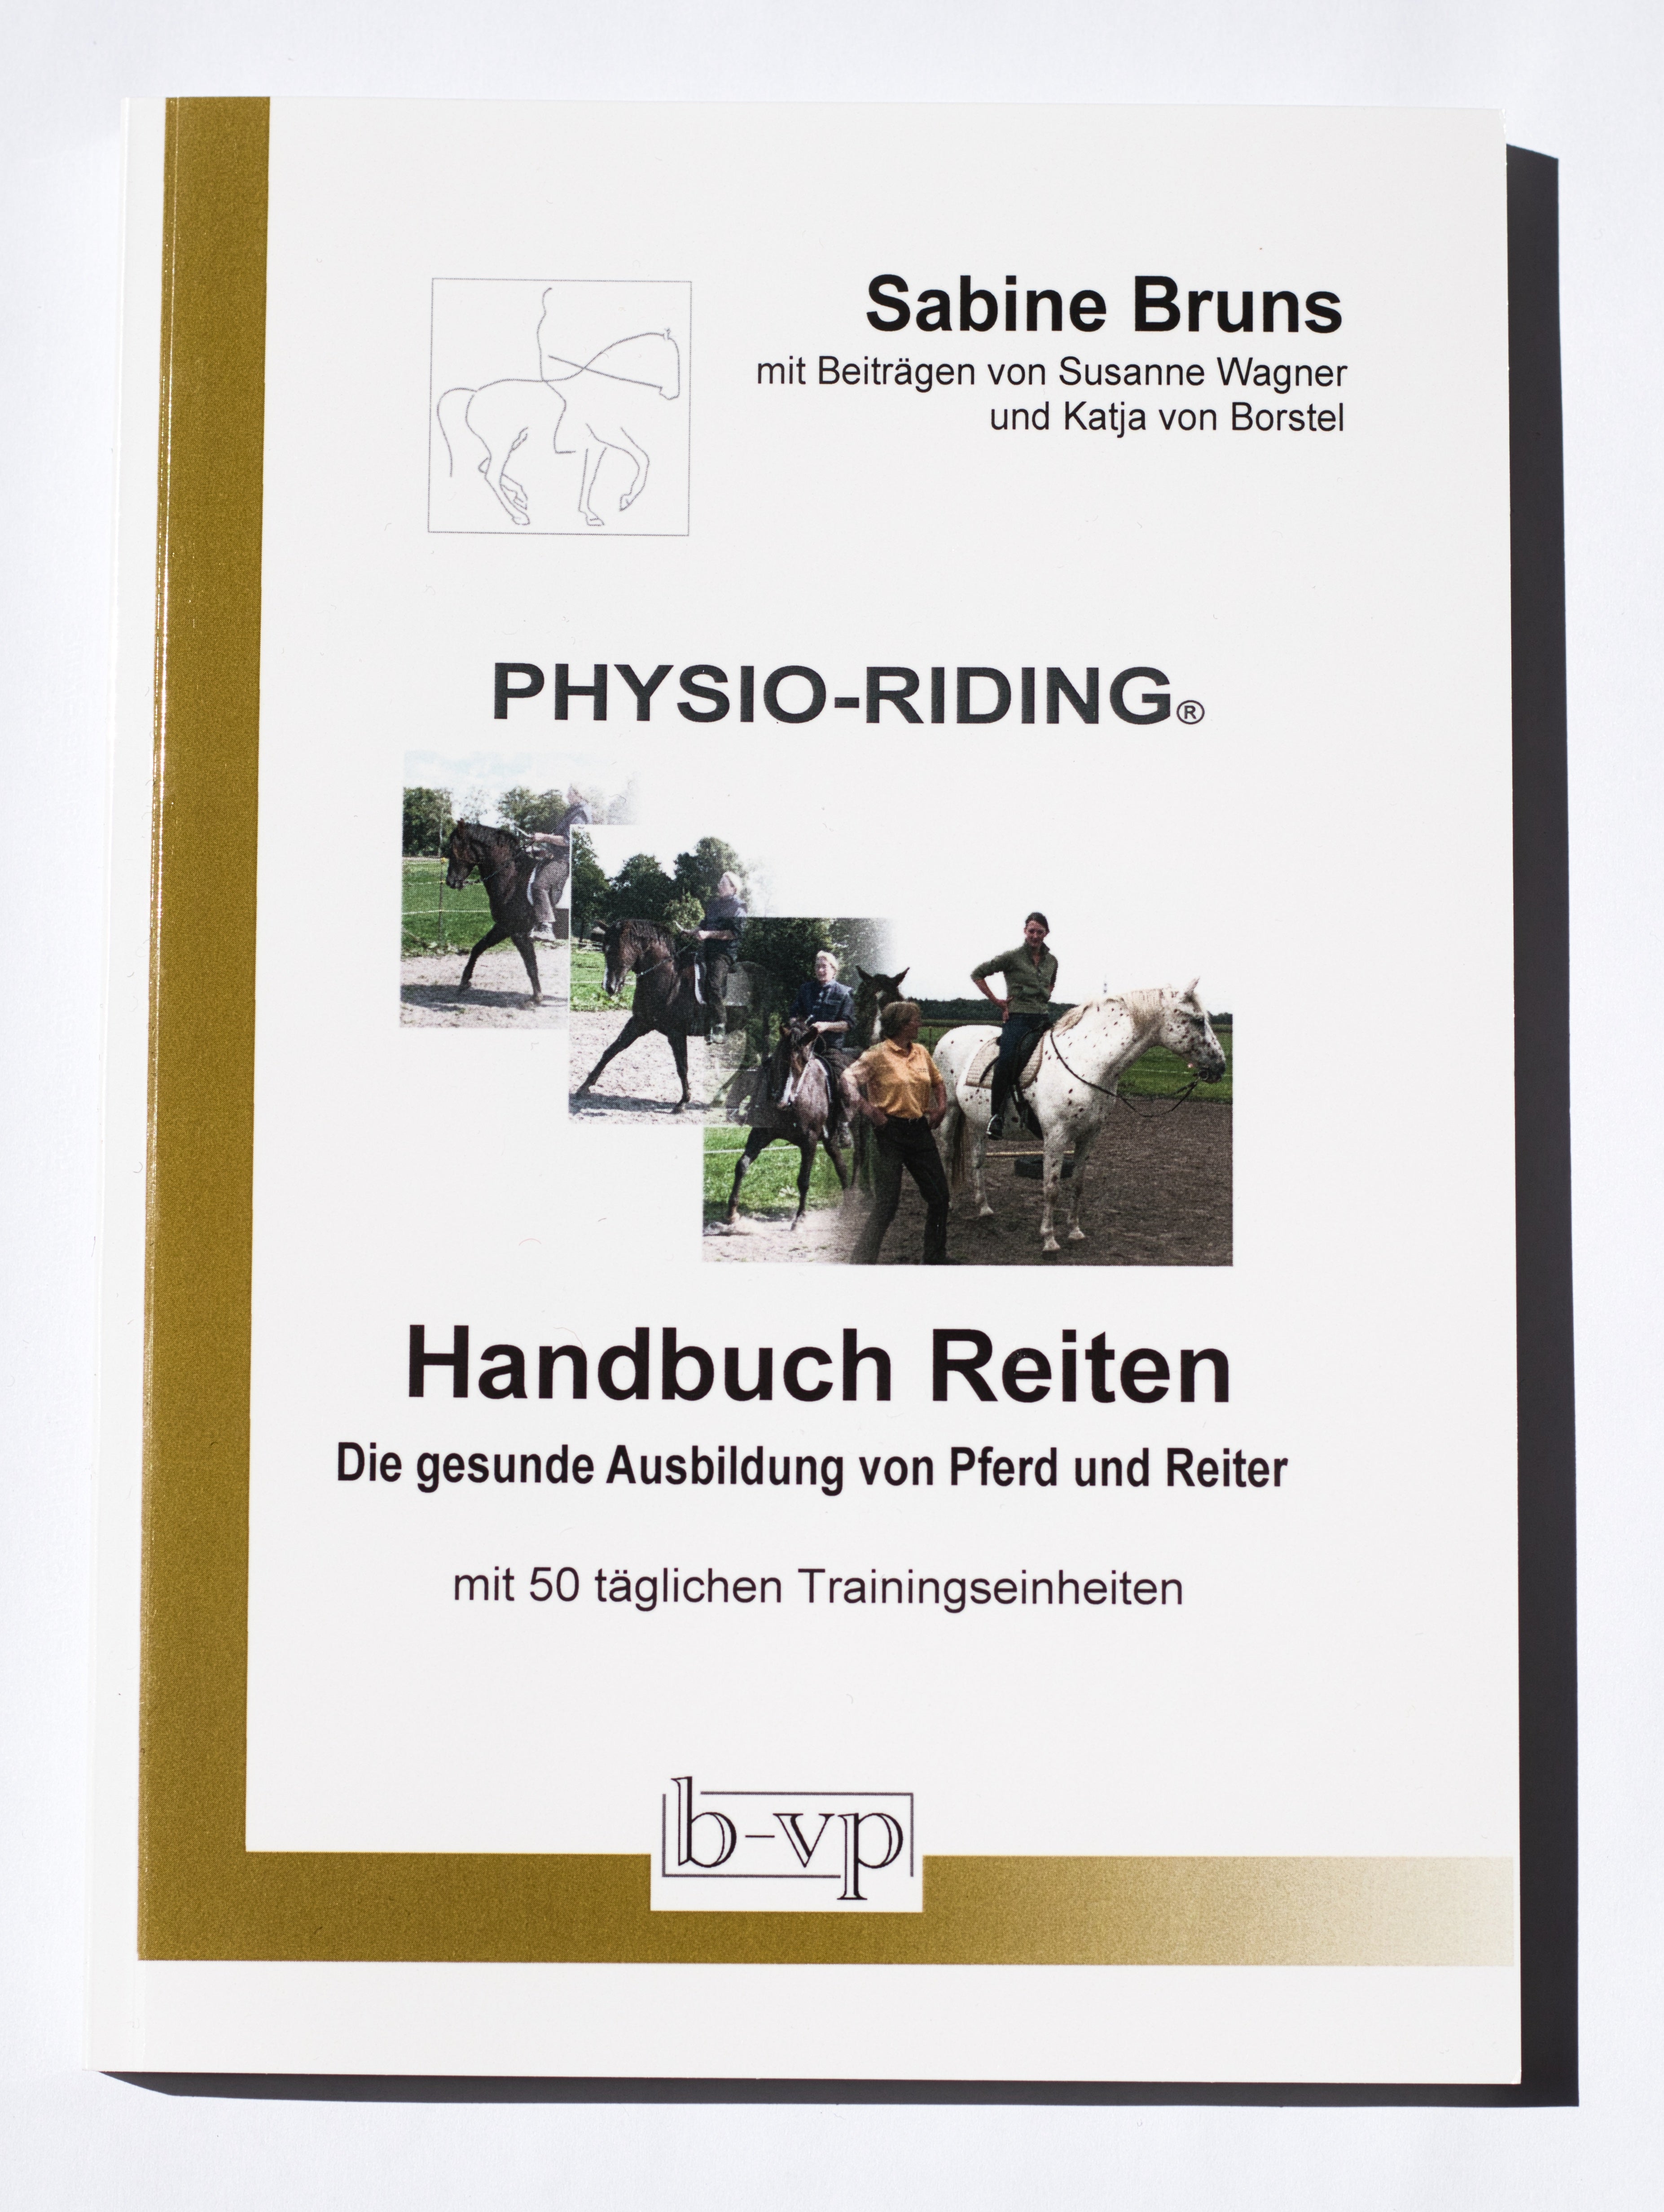 PHYSIO-RIDING: Handbuch Reiten